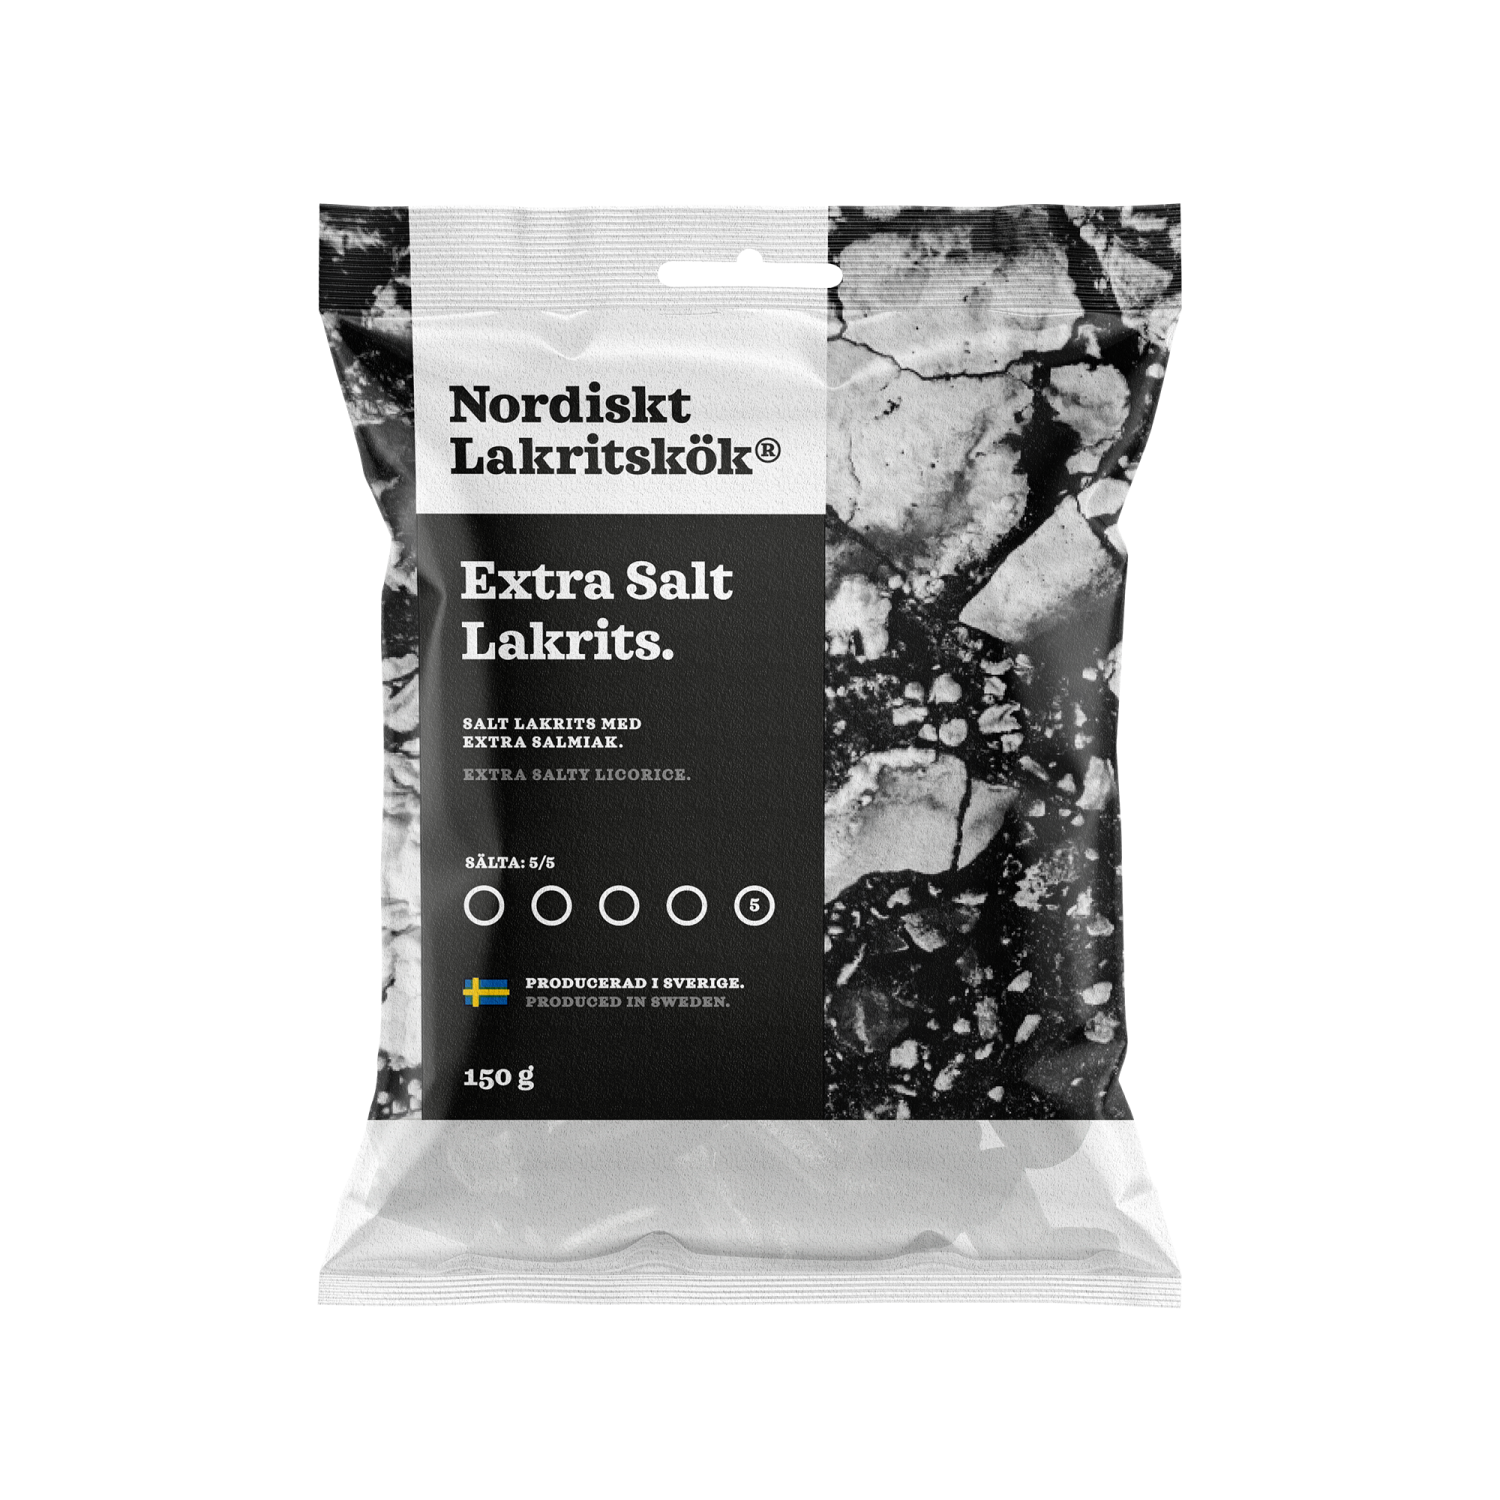 Nordiskt lakritskök - extra salt lakrits